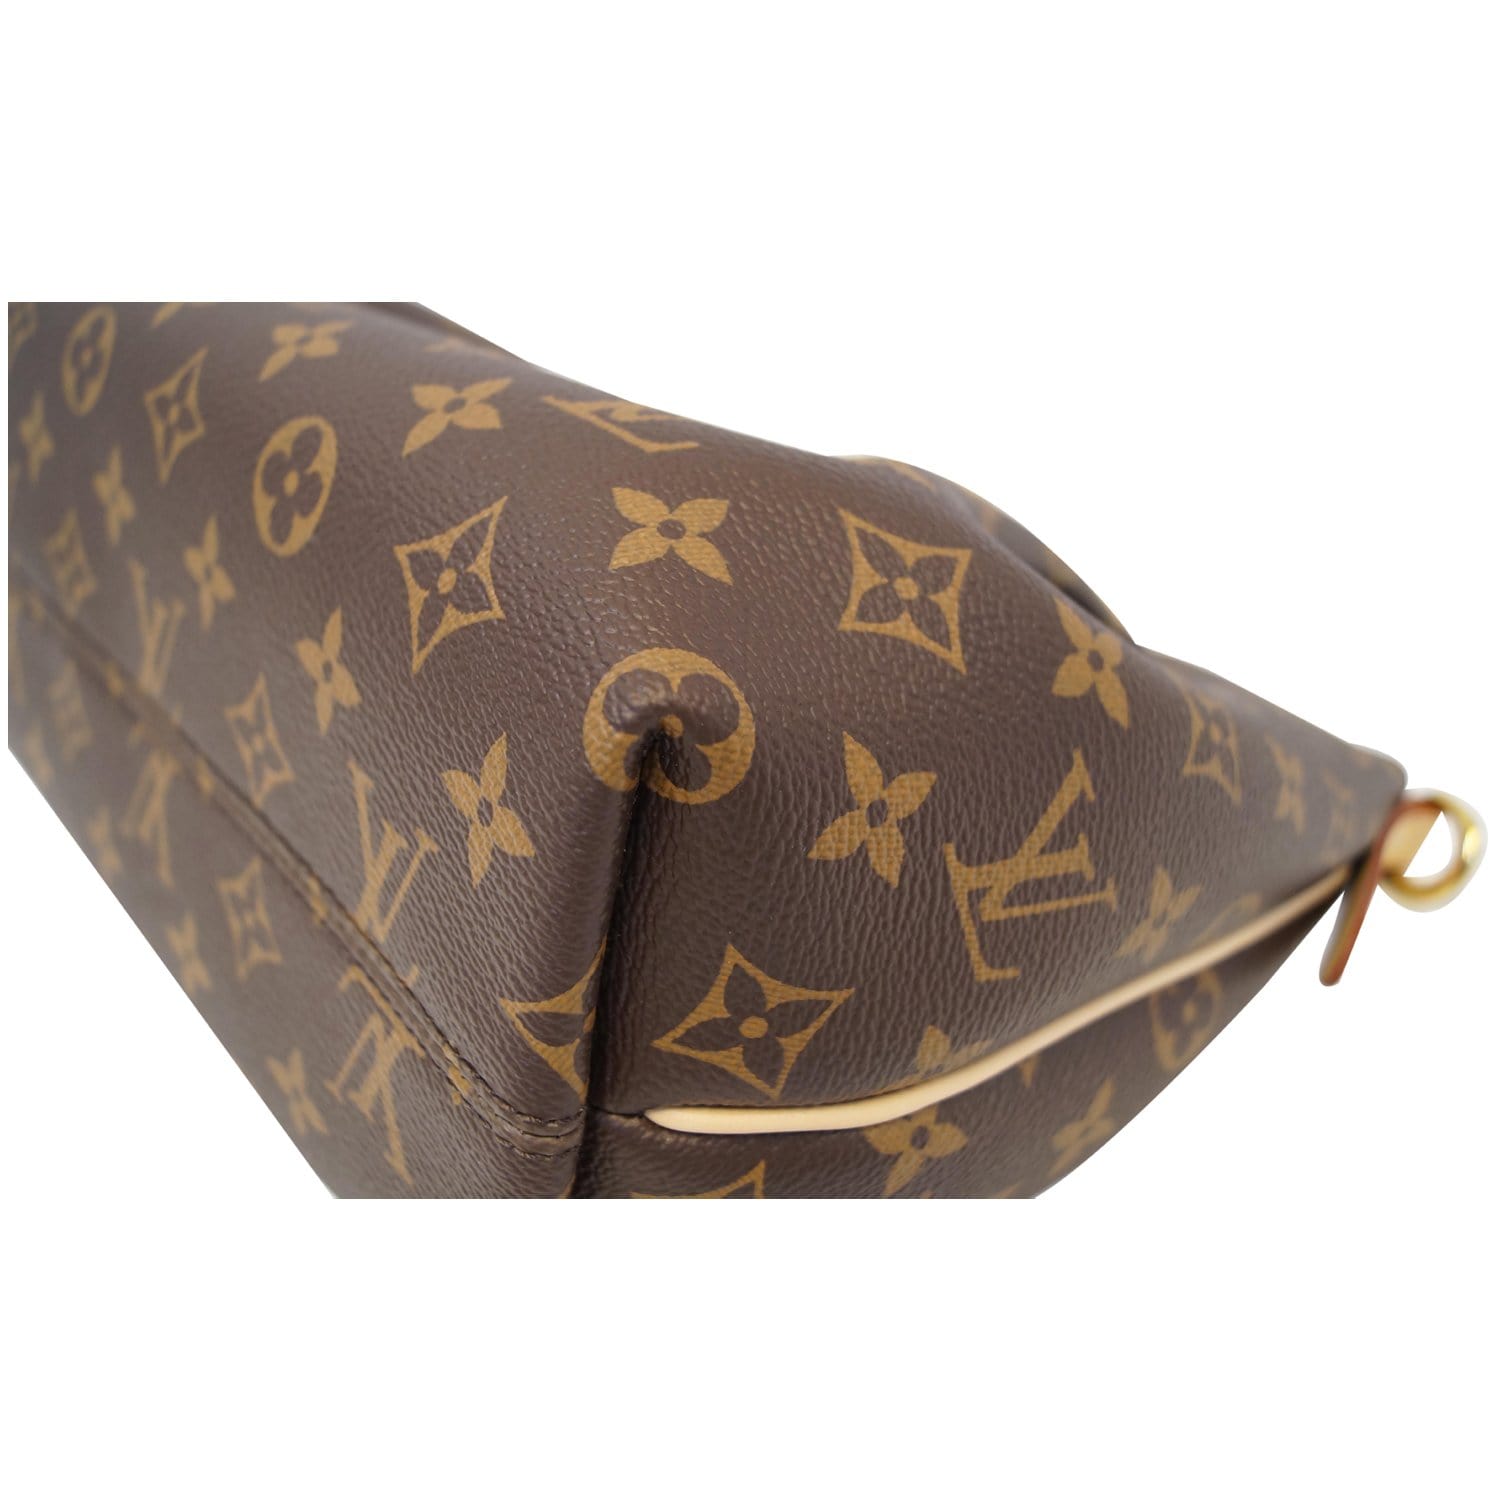 Turenne cloth handbag Louis Vuitton Brown in Cloth - 29523115